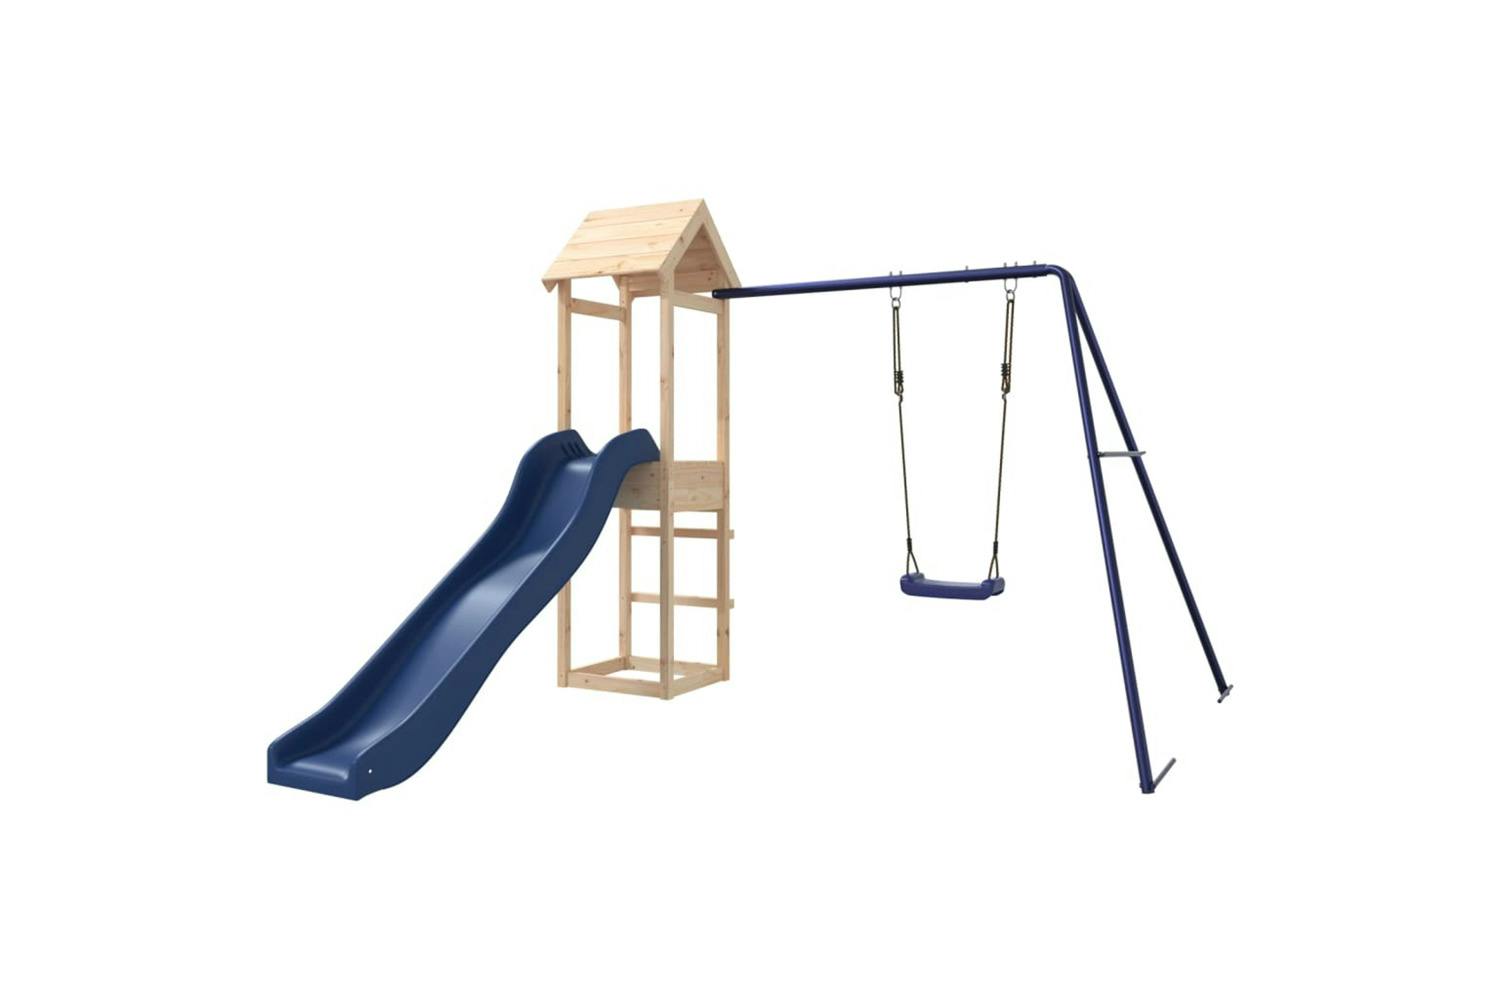 Vidaxl 3155855 Playhouse With Slide Swing Solid Wood Pine